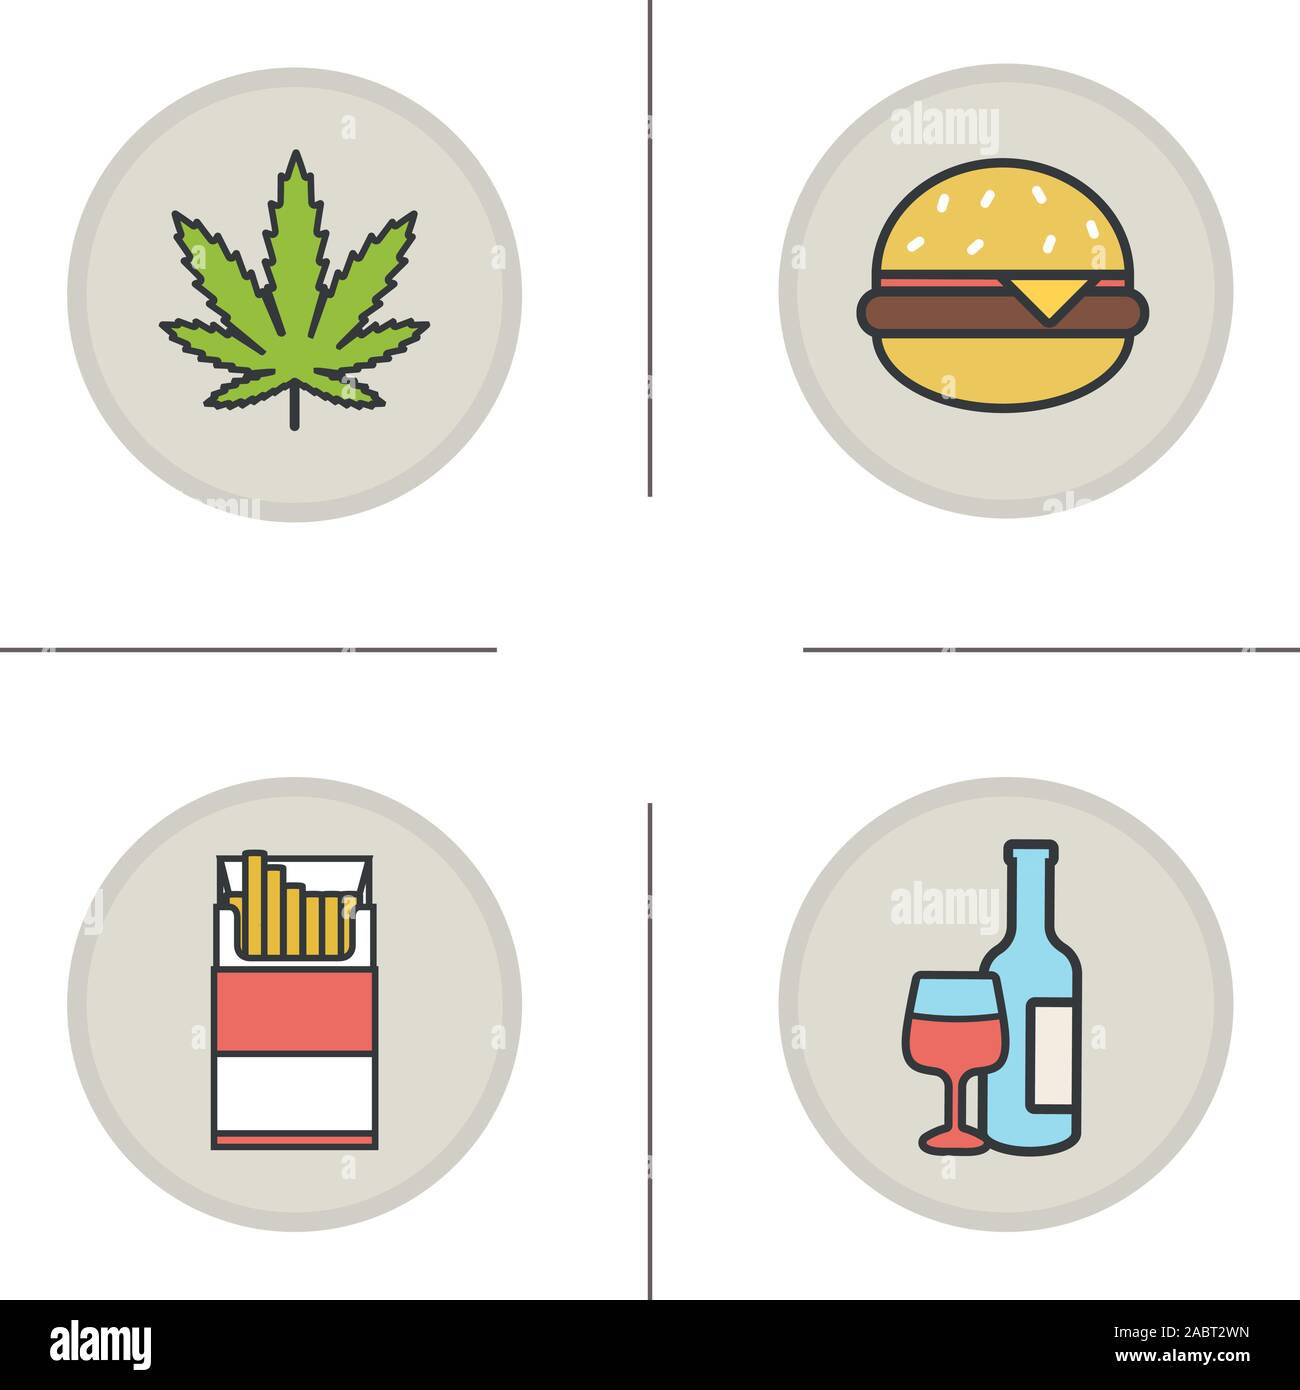 Las adicciones y malos hábitos los iconos de colores. Hoja de marihuana,  Hamburger, abra el paquete de cigarrillos, una botella de vino y cristal.  Drogas, tabaco, alcohol y fast foo Imagen Vector